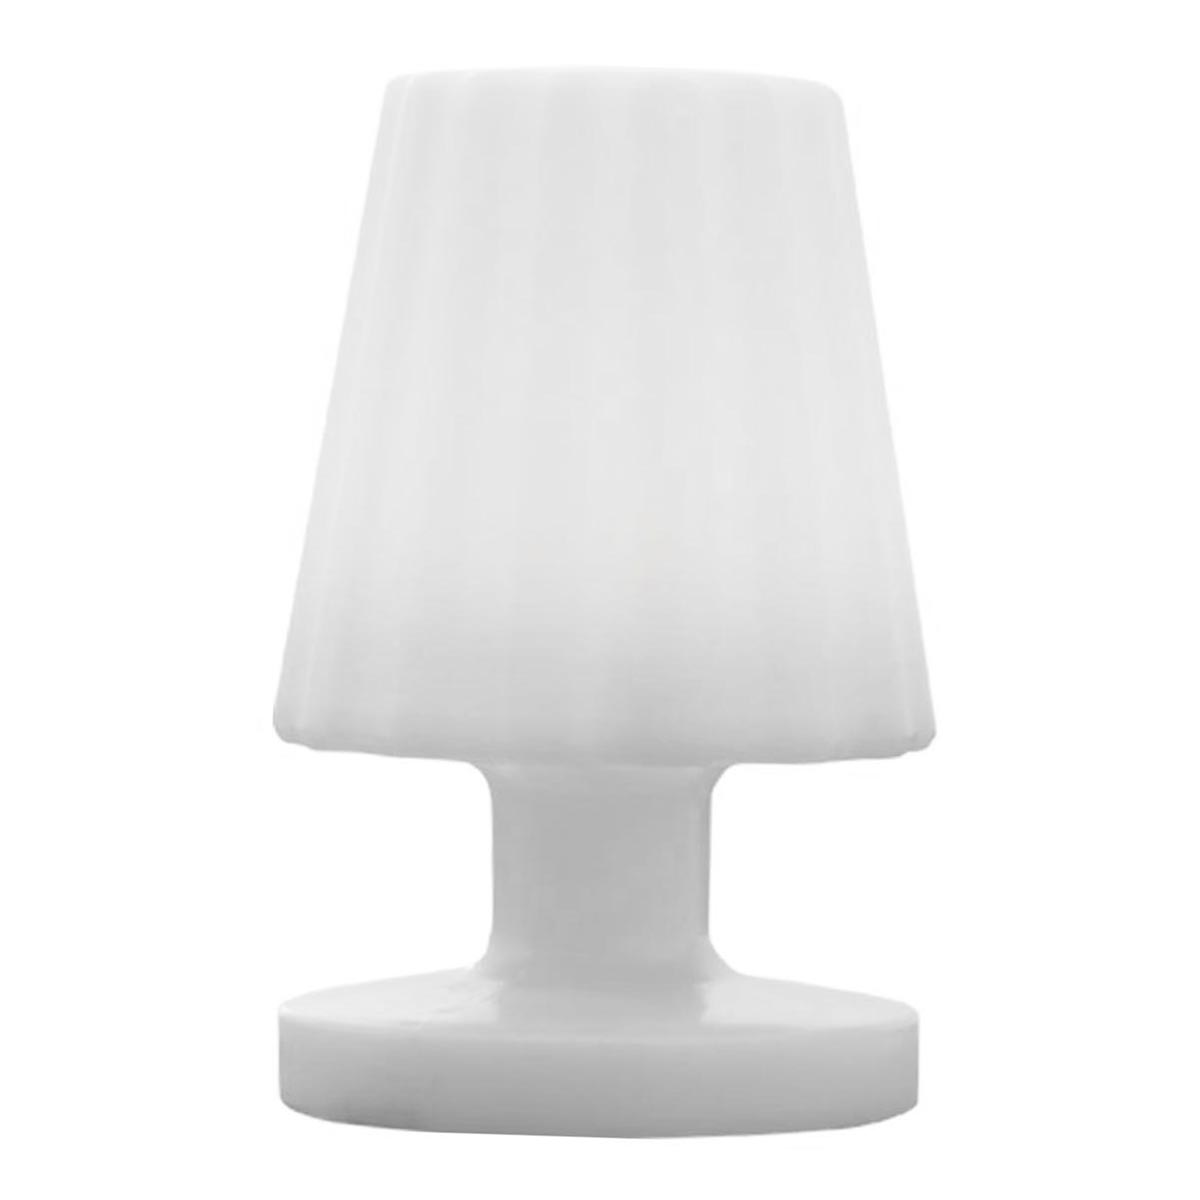 Mini lampe à poser rechargeable sans fil LED blanc chaud dimmable LADY MINI H22cm - REDDECO.com